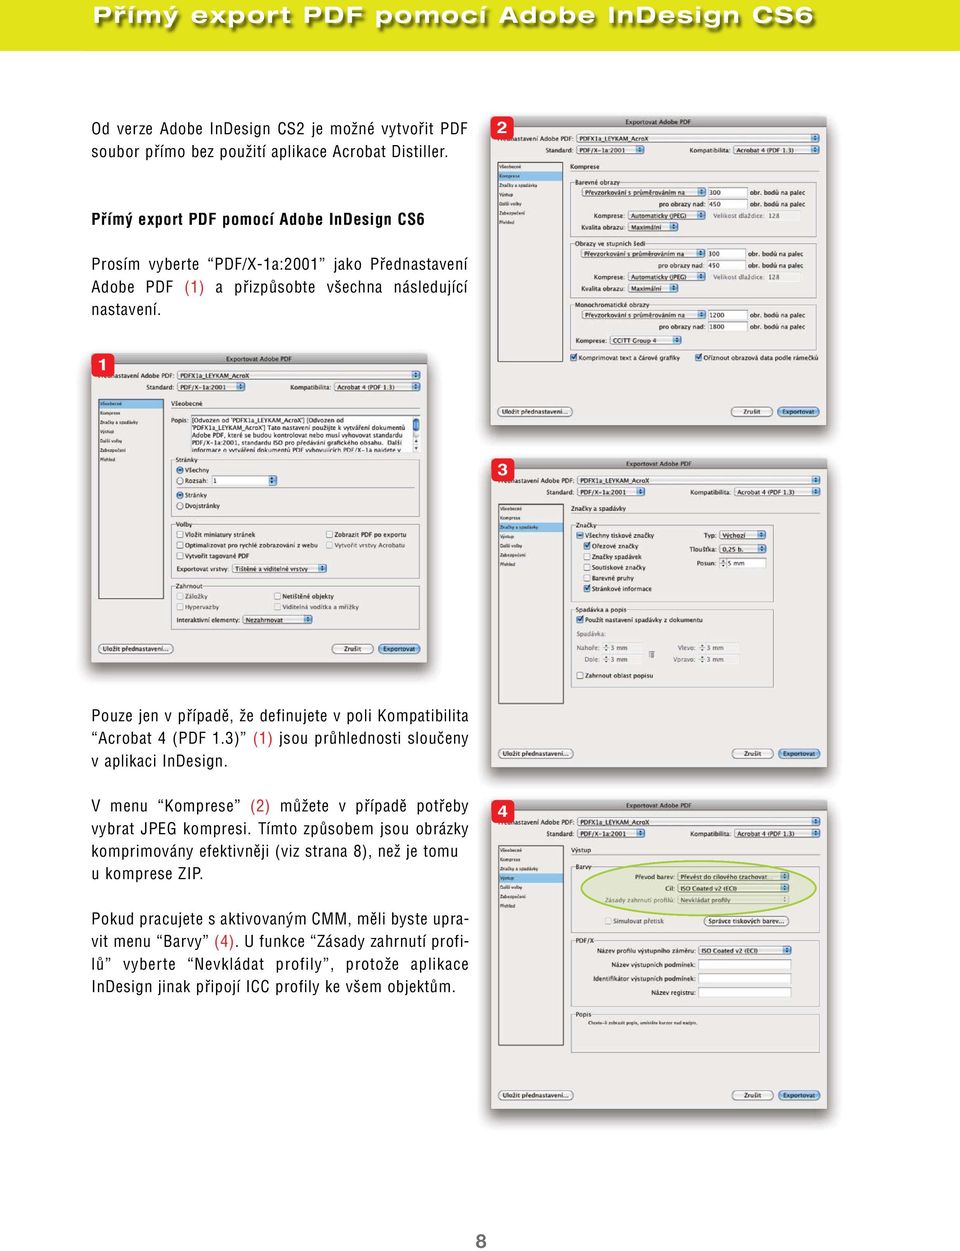 1 3 Pouze jen v případě, že definujete v poli Kompatibilita Acrobat 4 (PDF 1.3) (1) jsou průhlednosti sloučeny v aplikaci InDesign. V menu Komprese (2) můžete v případě potřeby vybrat JPEG kompresi.